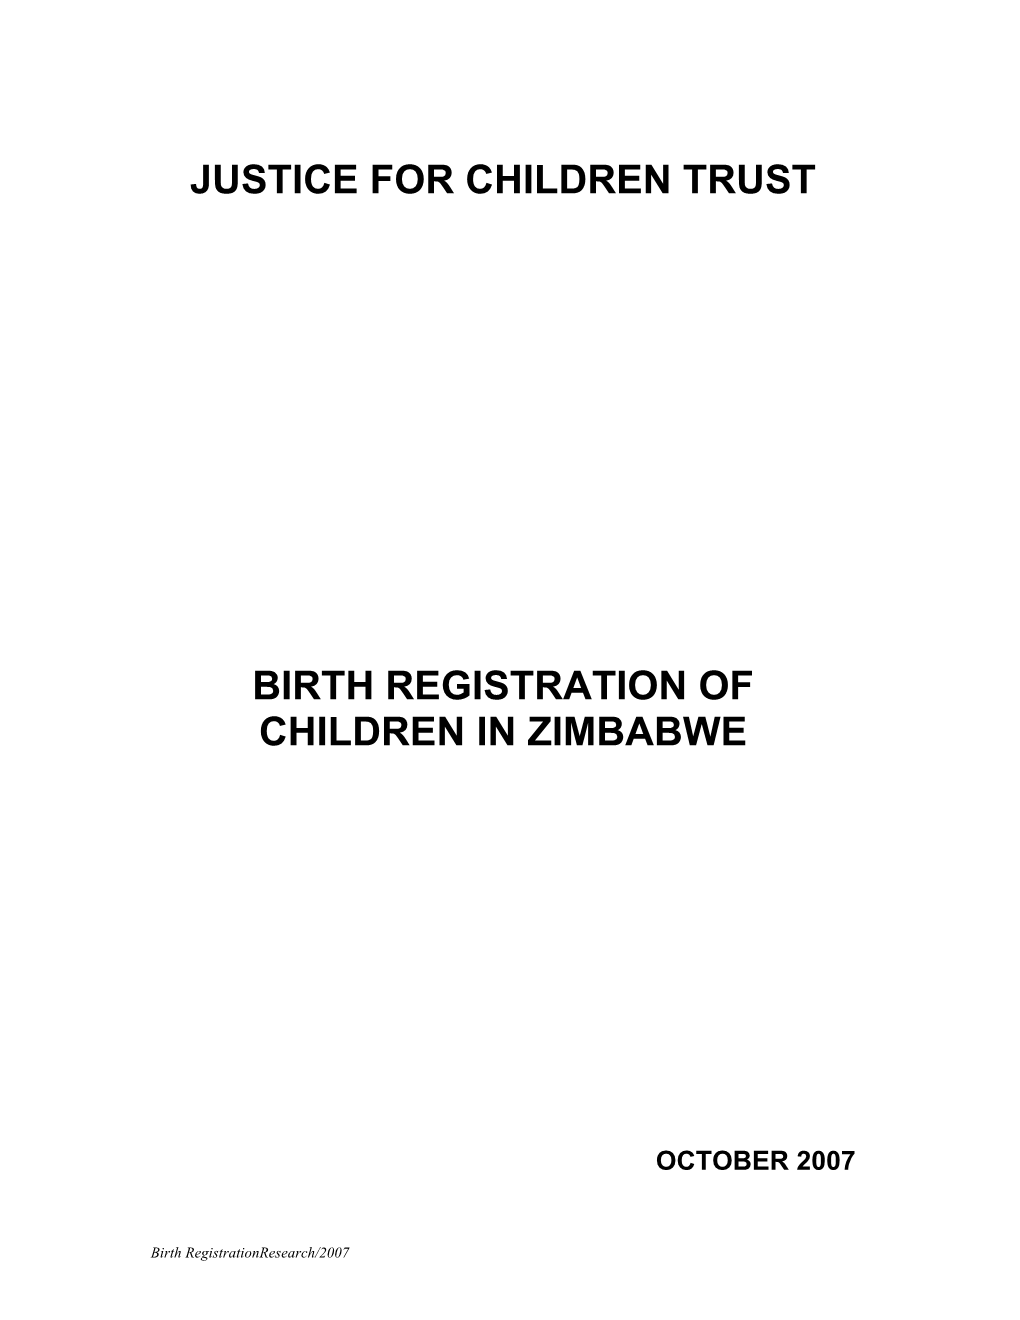 Justice for Children Trust